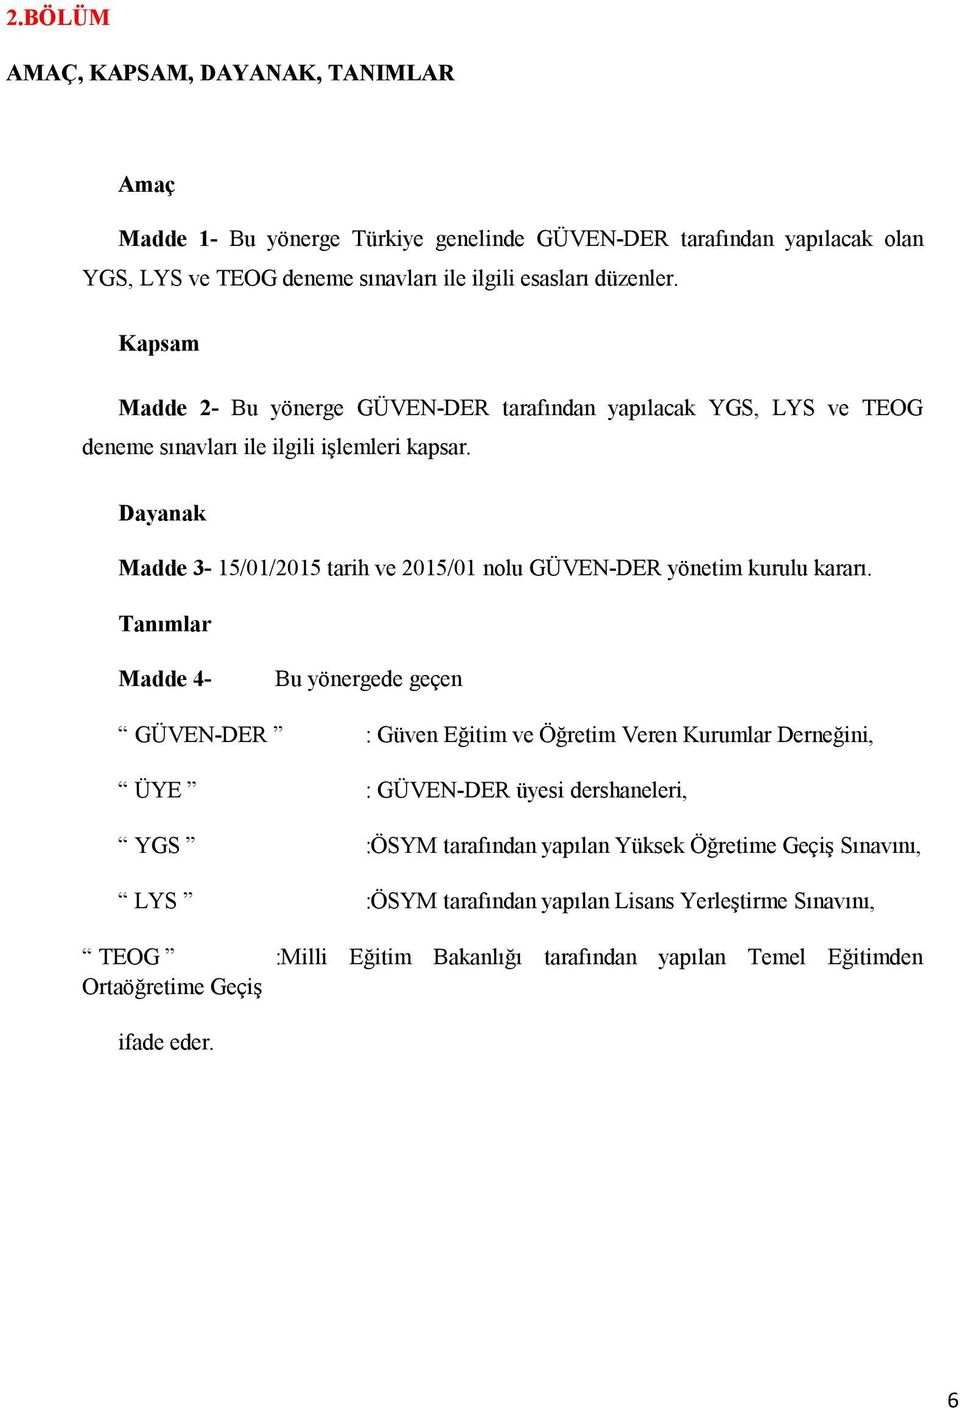 Dayanak Madde 3-15/01/2015 tarih ve 2015/01 nolu GÜVEN-DER yönetim kurulu kararı.